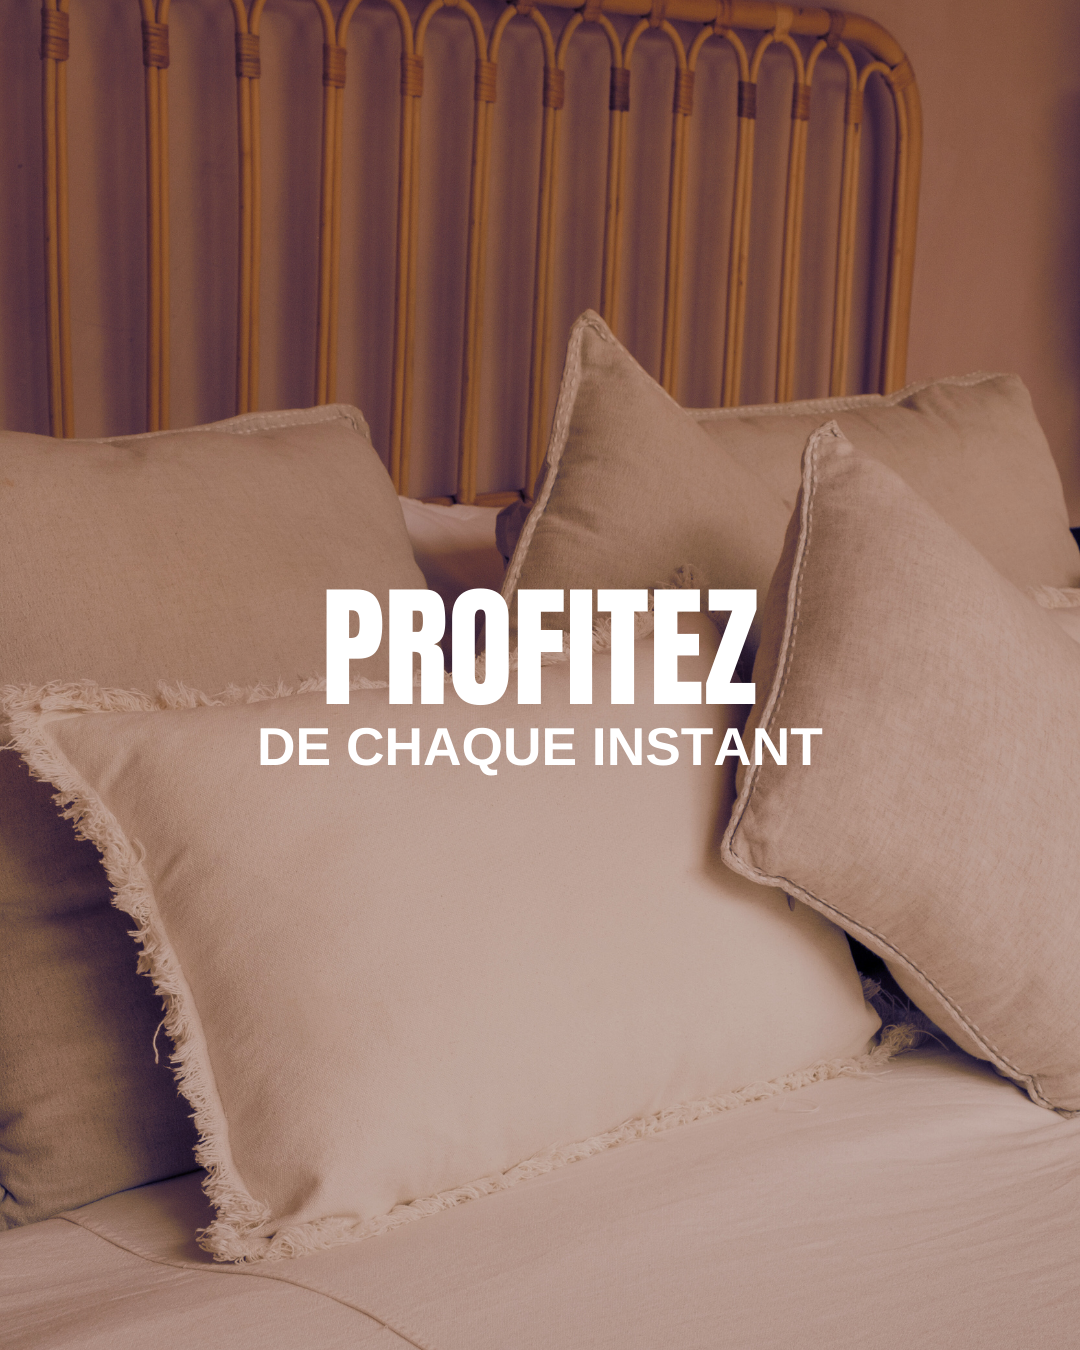 TEMPLATE BUNDLE pour post Instagram - 50 templates - modifiables sur Canva - ST JEAN DE LUZ